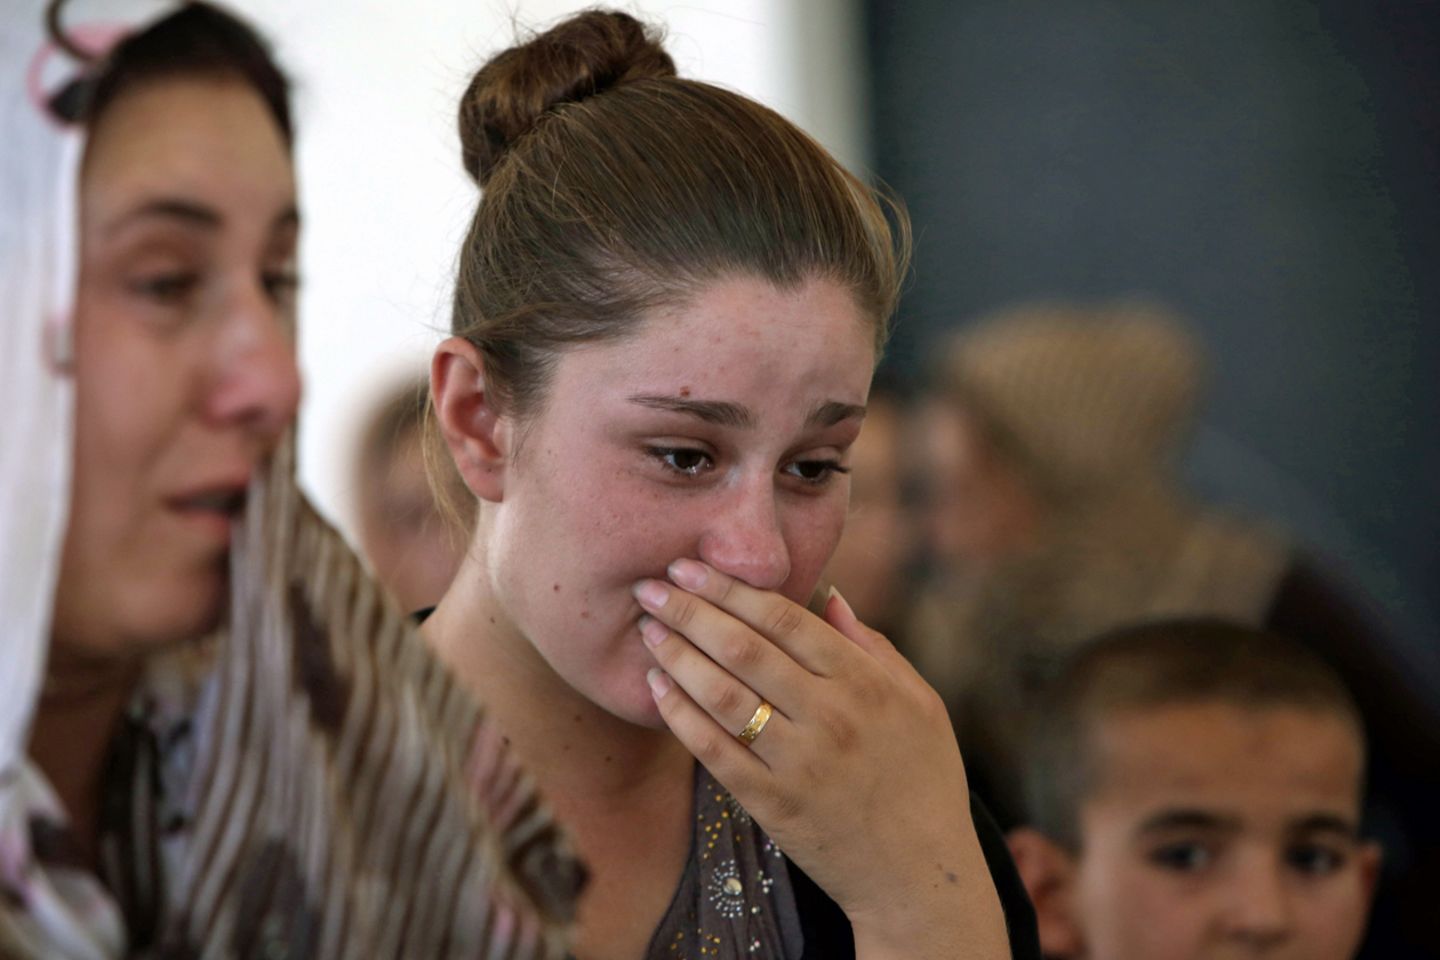 Sie muss weinen: Eine jesidische Frau nach der Flucht aus ihrer Heimat im Nordirak. Die Kurdisch sprechenden Jesiden werden von den Dschihadisten als "Teufelsanbeter" betrachtet und verfolgt.